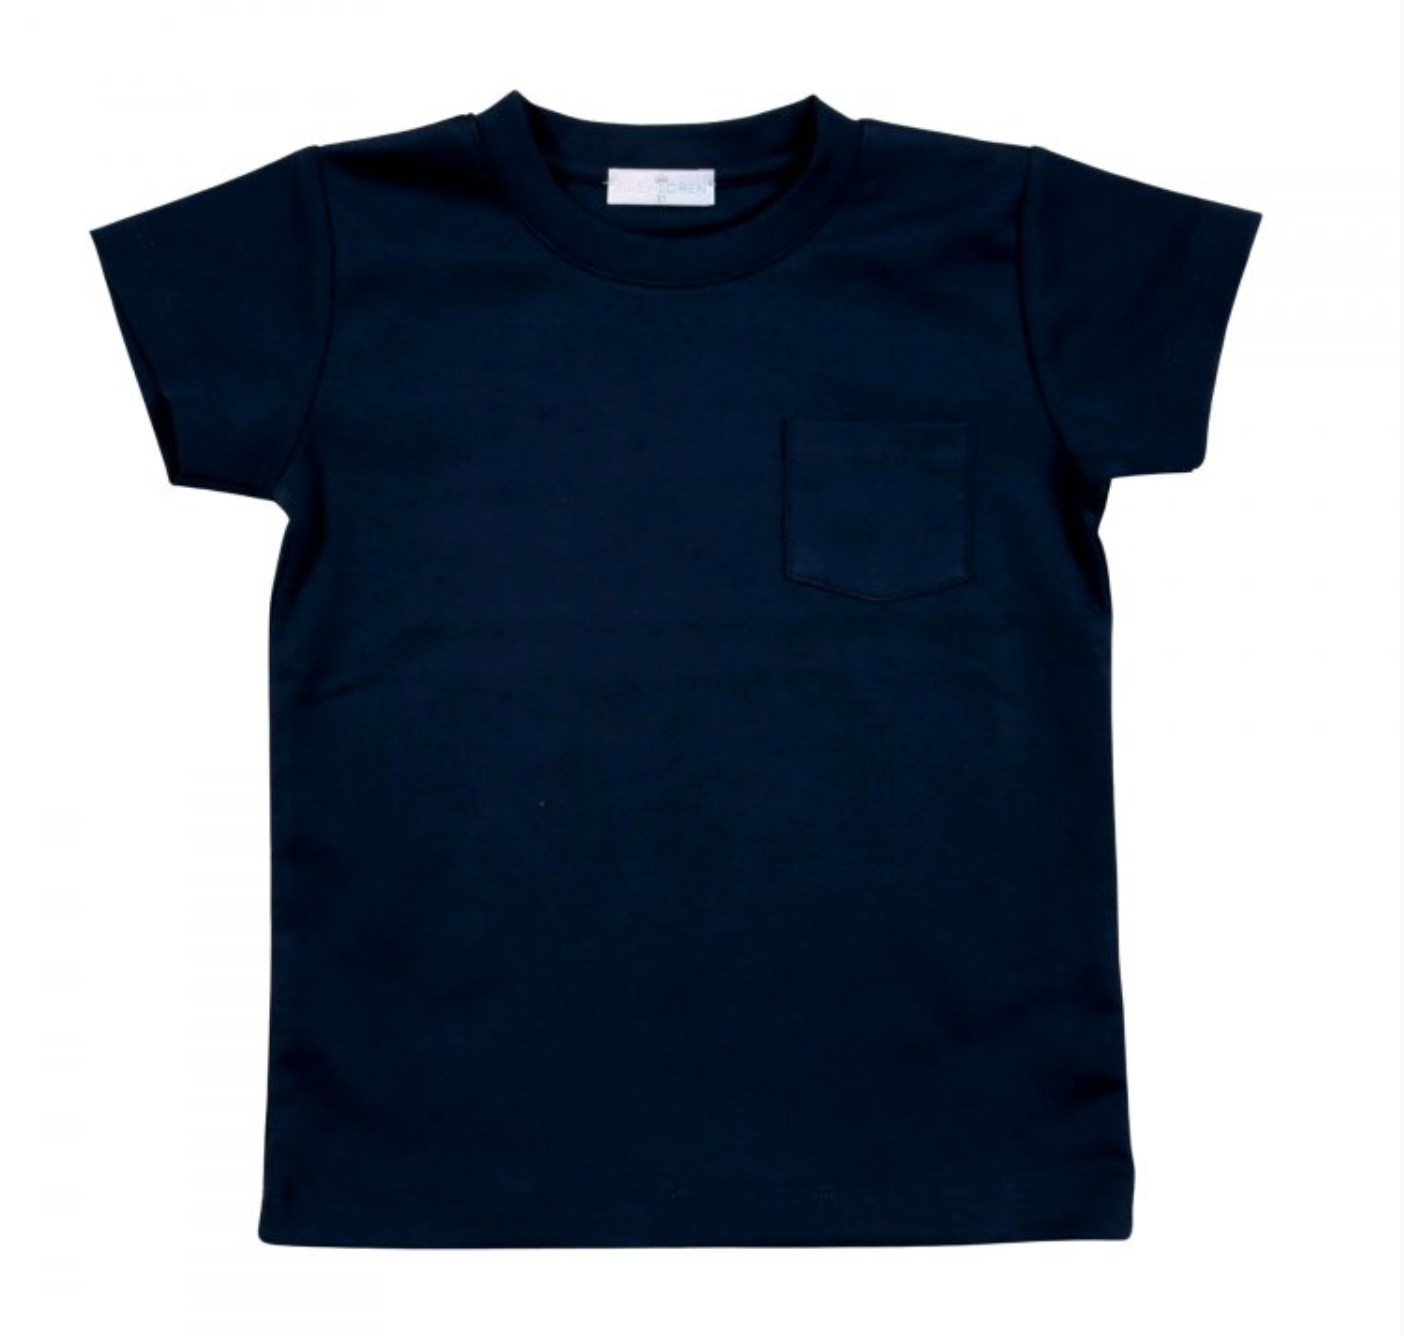 Navy Blue T-shirt - Magpies Paducah